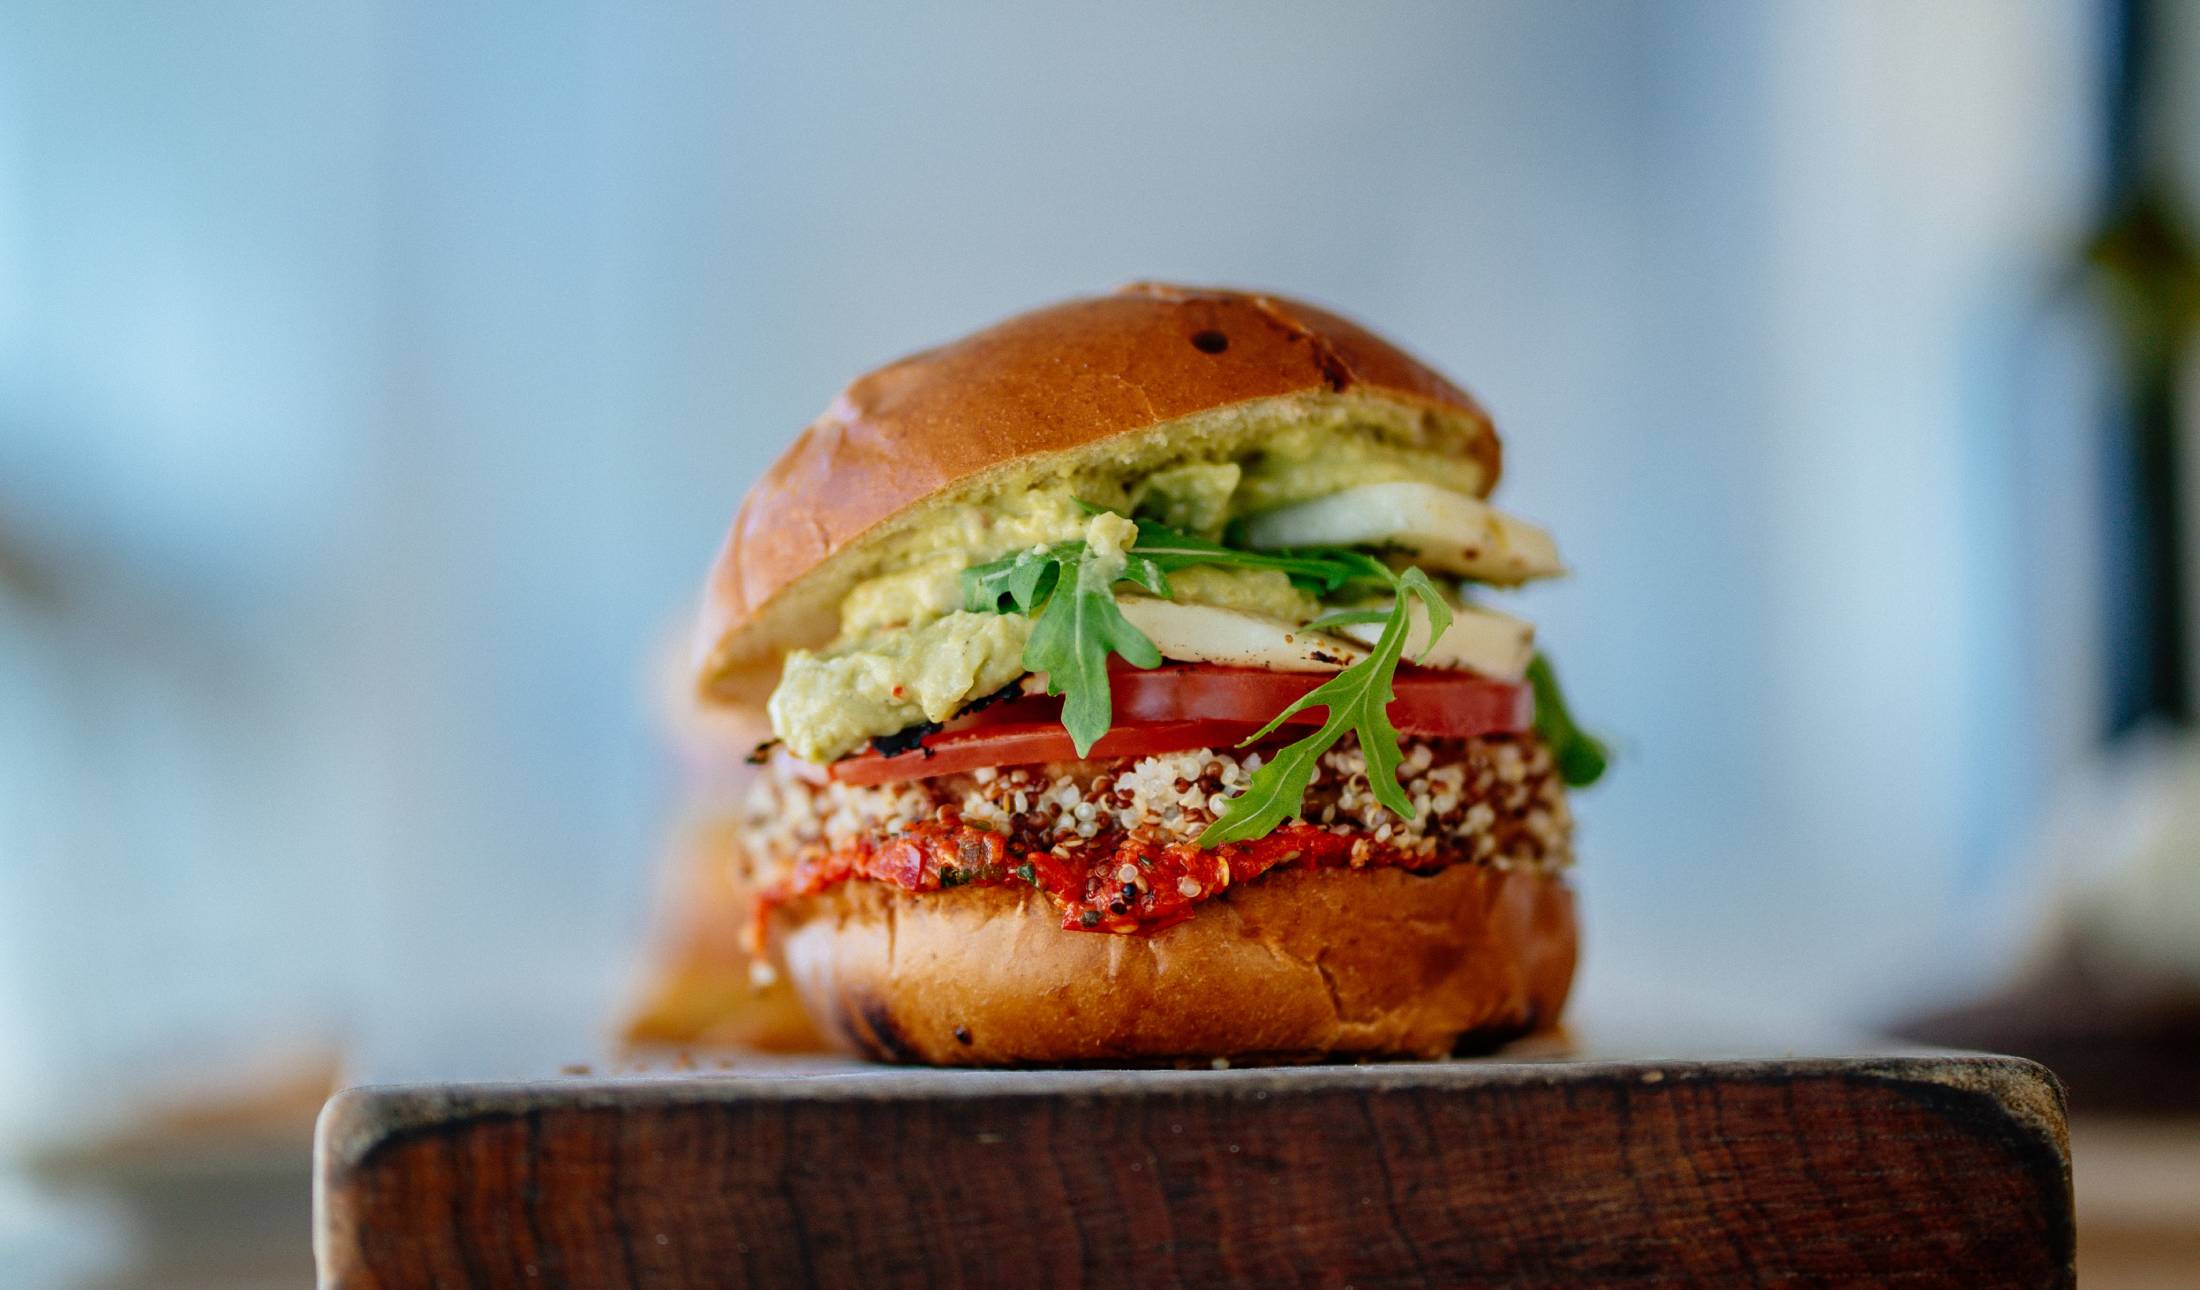 Σαρακοστή: Οι καλύτερες ιδέες για vegetarian burger στο σπίτι